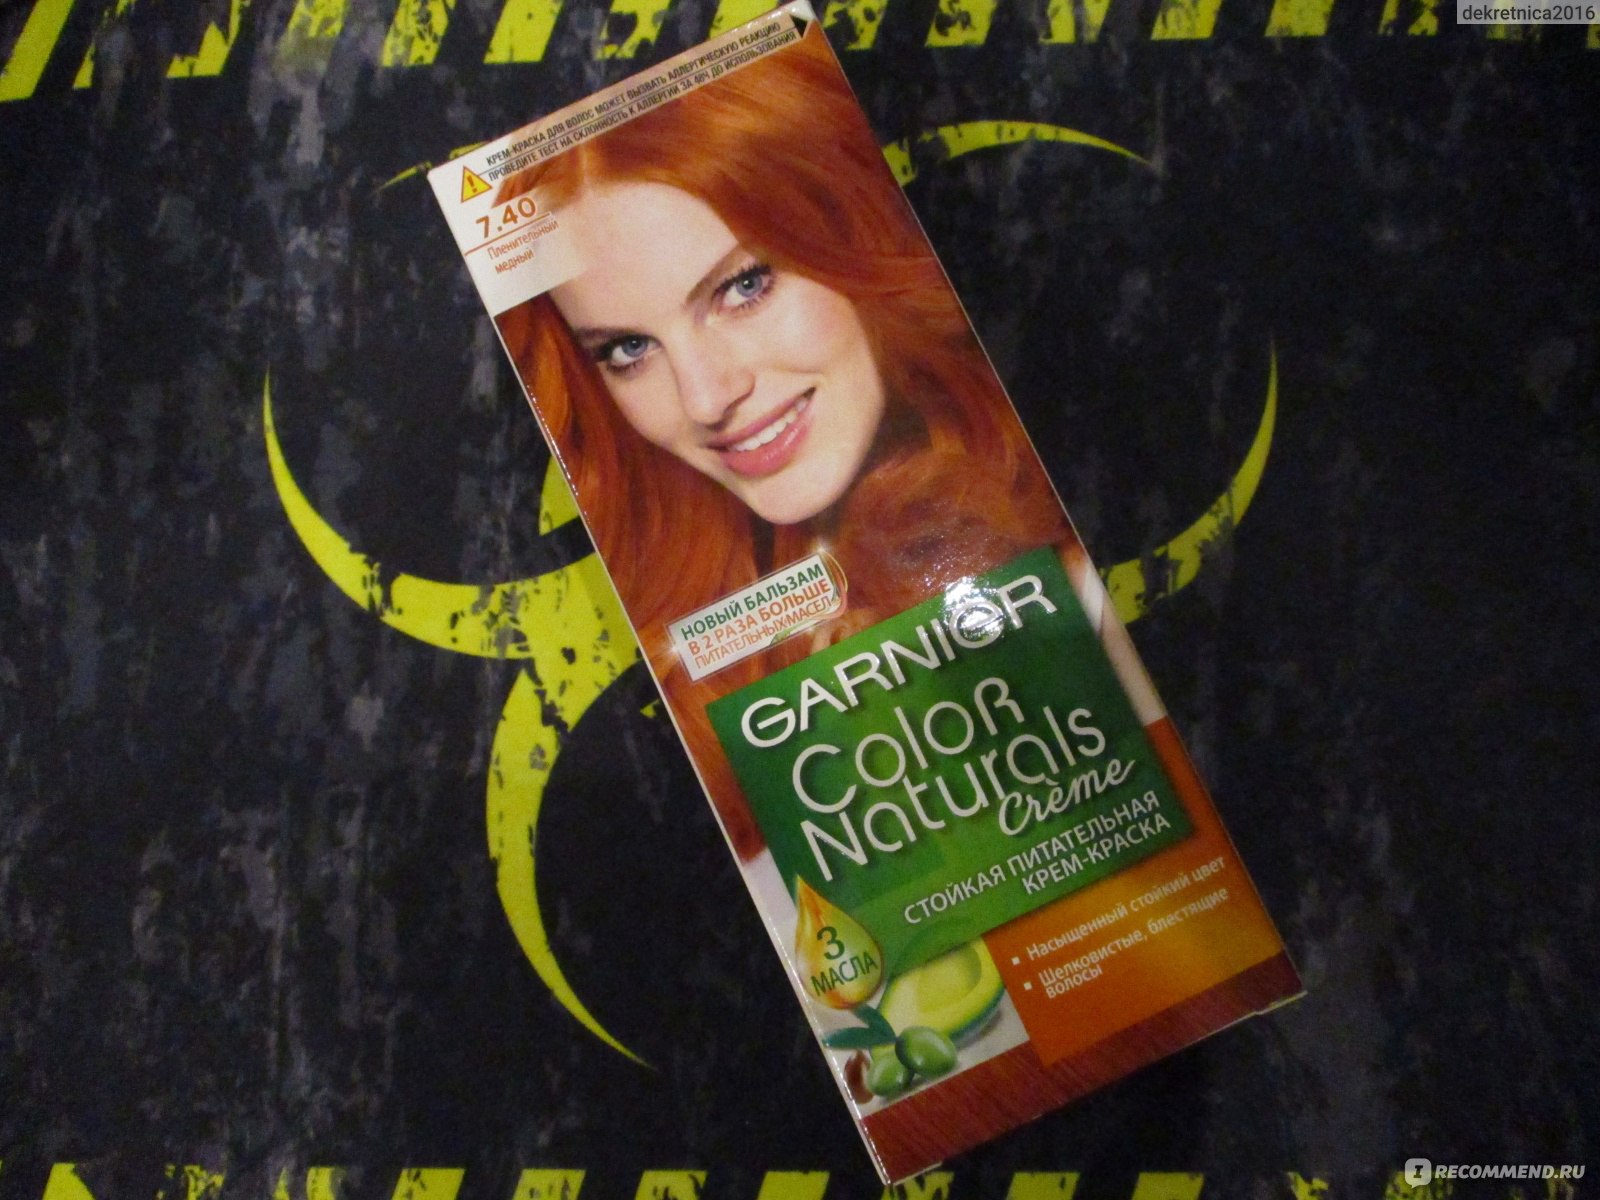 Краска для волос Garnier Color naturals "Глубокое питание, насыщенный цвет" фото